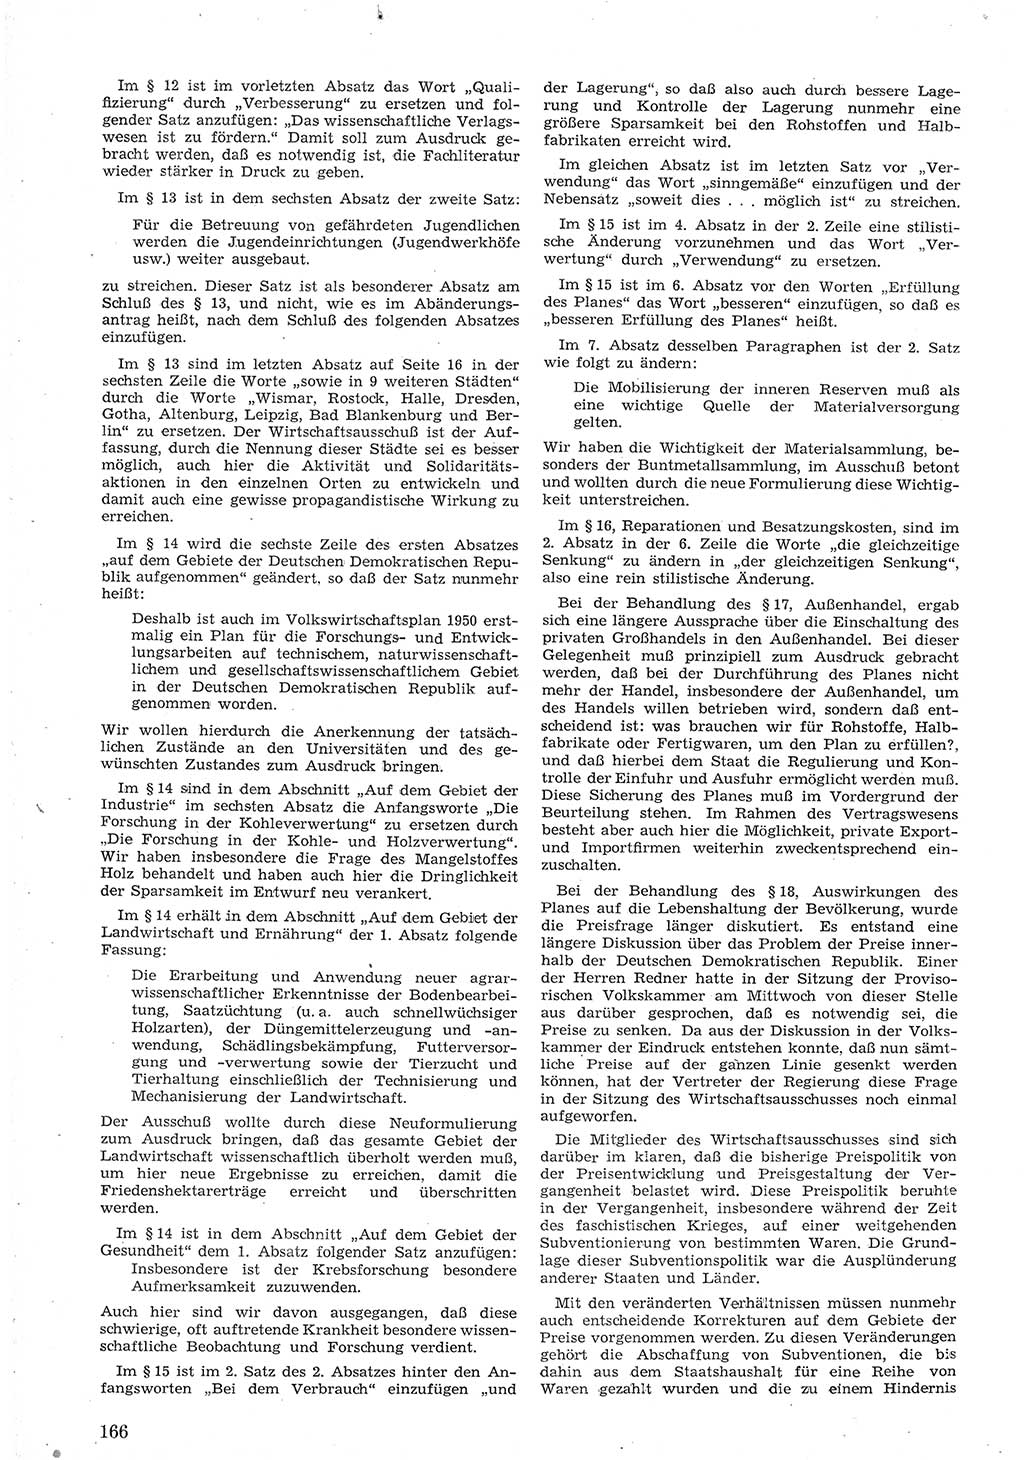 Provisorische Volkskammer (VK) der Deutschen Demokratischen Republik (DDR) 1949-1950, Dokument 178 (Prov. VK DDR 1949-1950, Dok. 178)